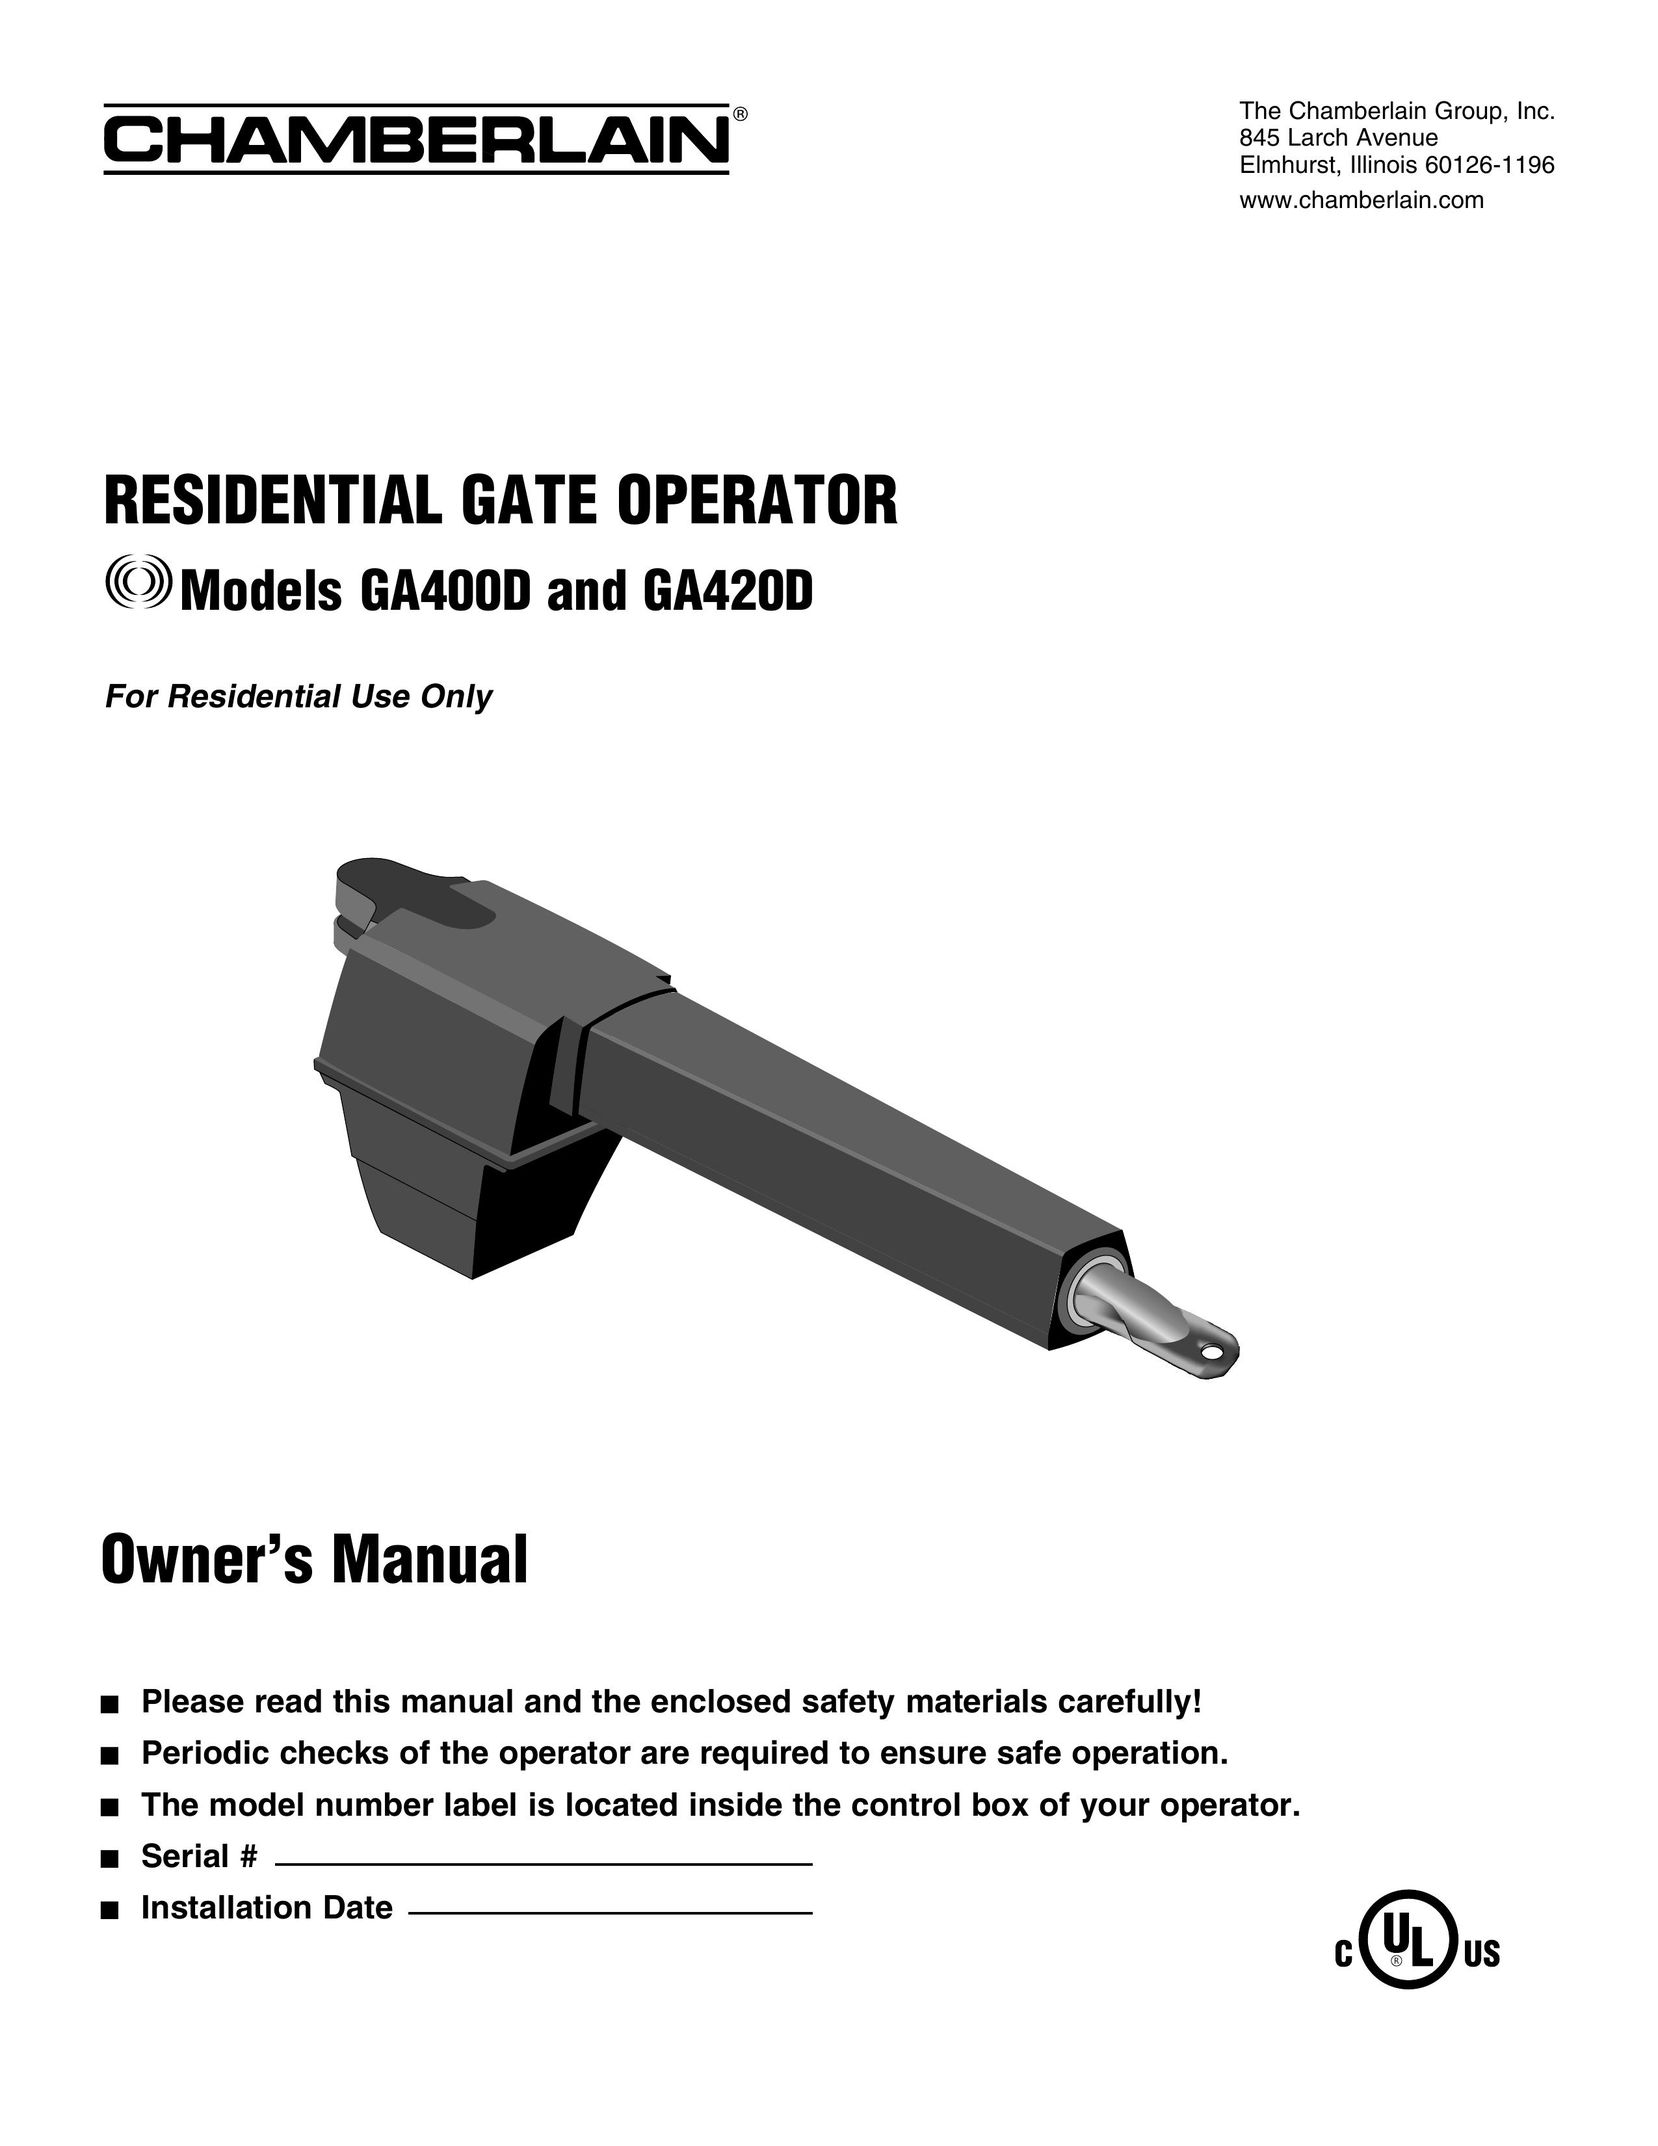 Chamberlain GA420D Safety Gate User Manual